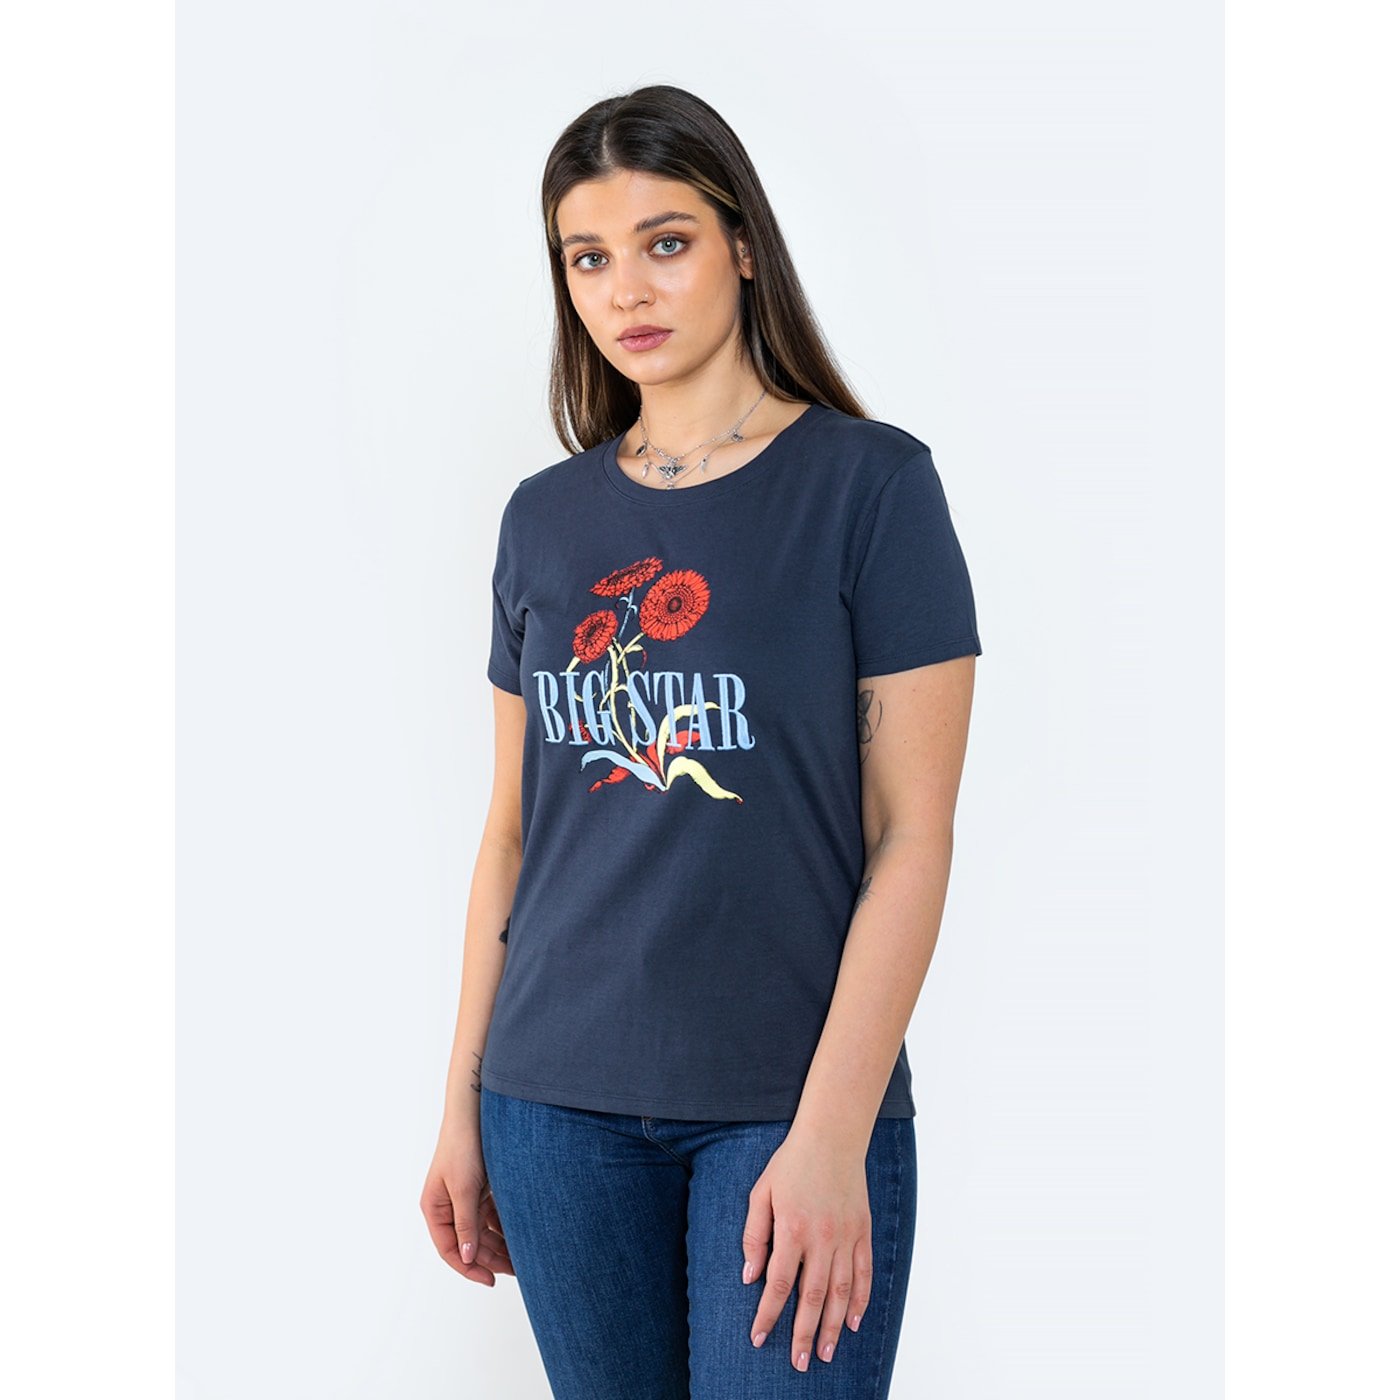 Big Star Woman's T-shirt_ss T-shirt 152022 Light blue-404